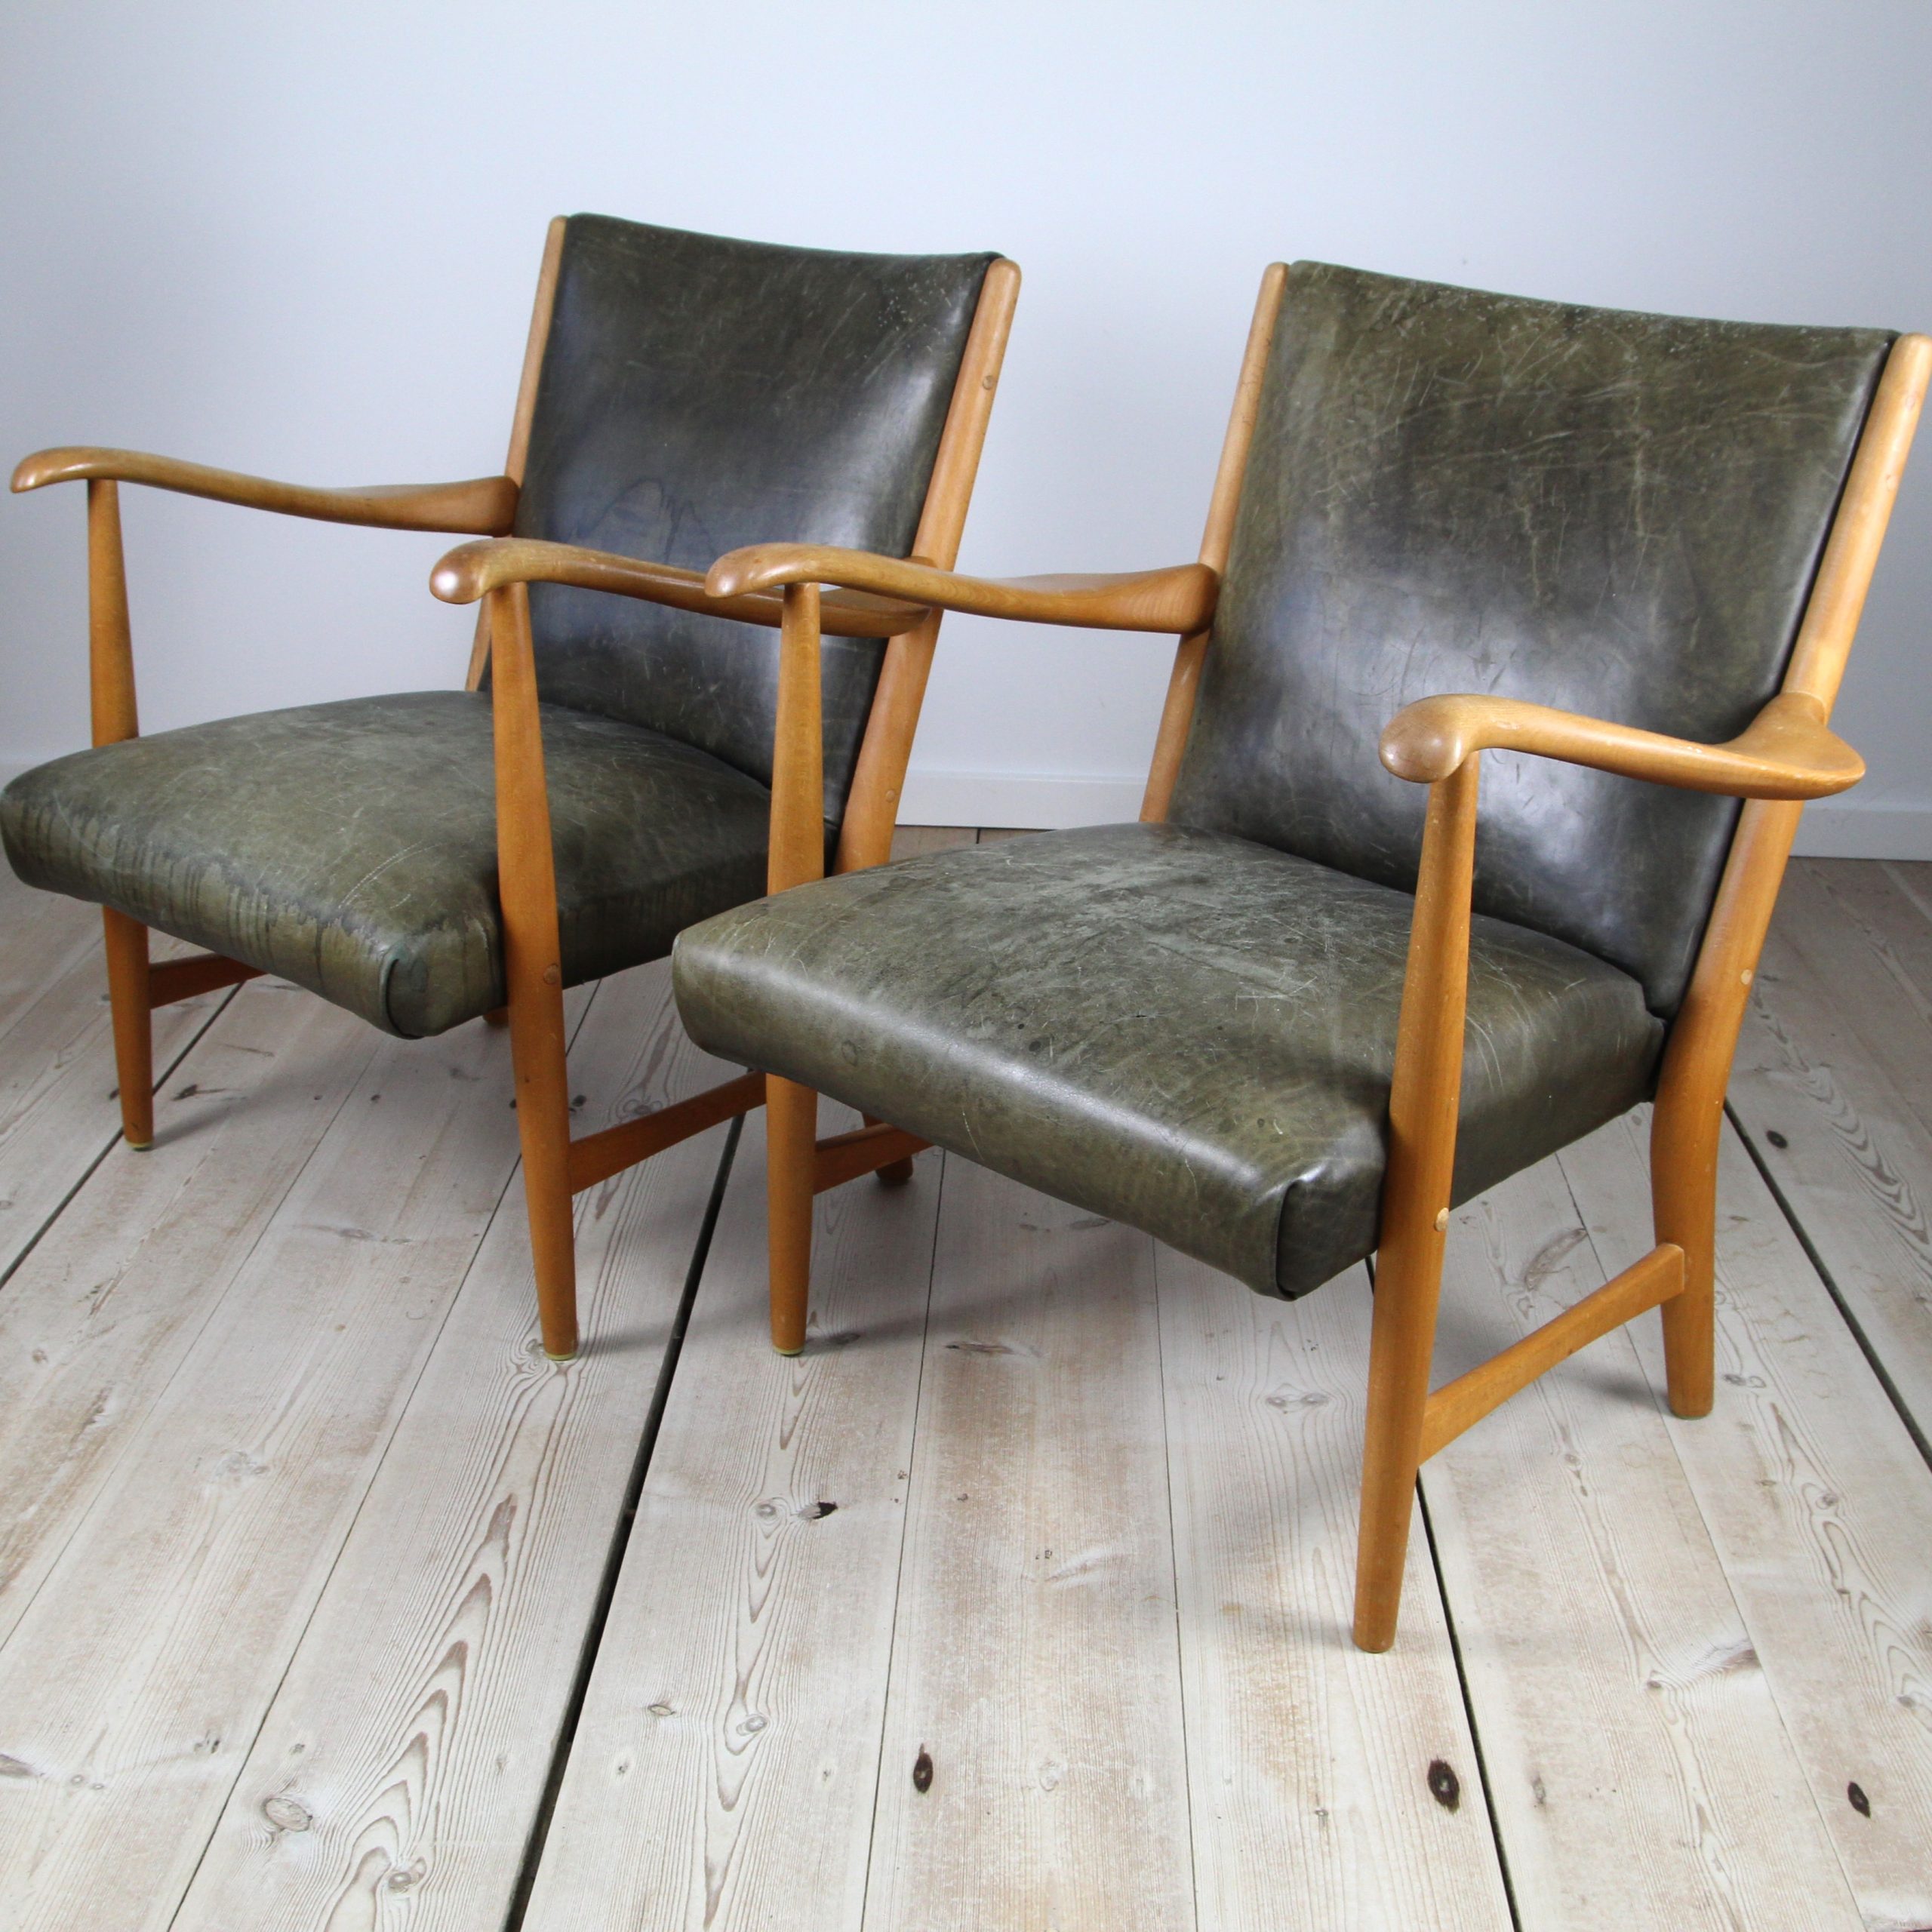 Pair of lounge chairs, Danish 1950’s